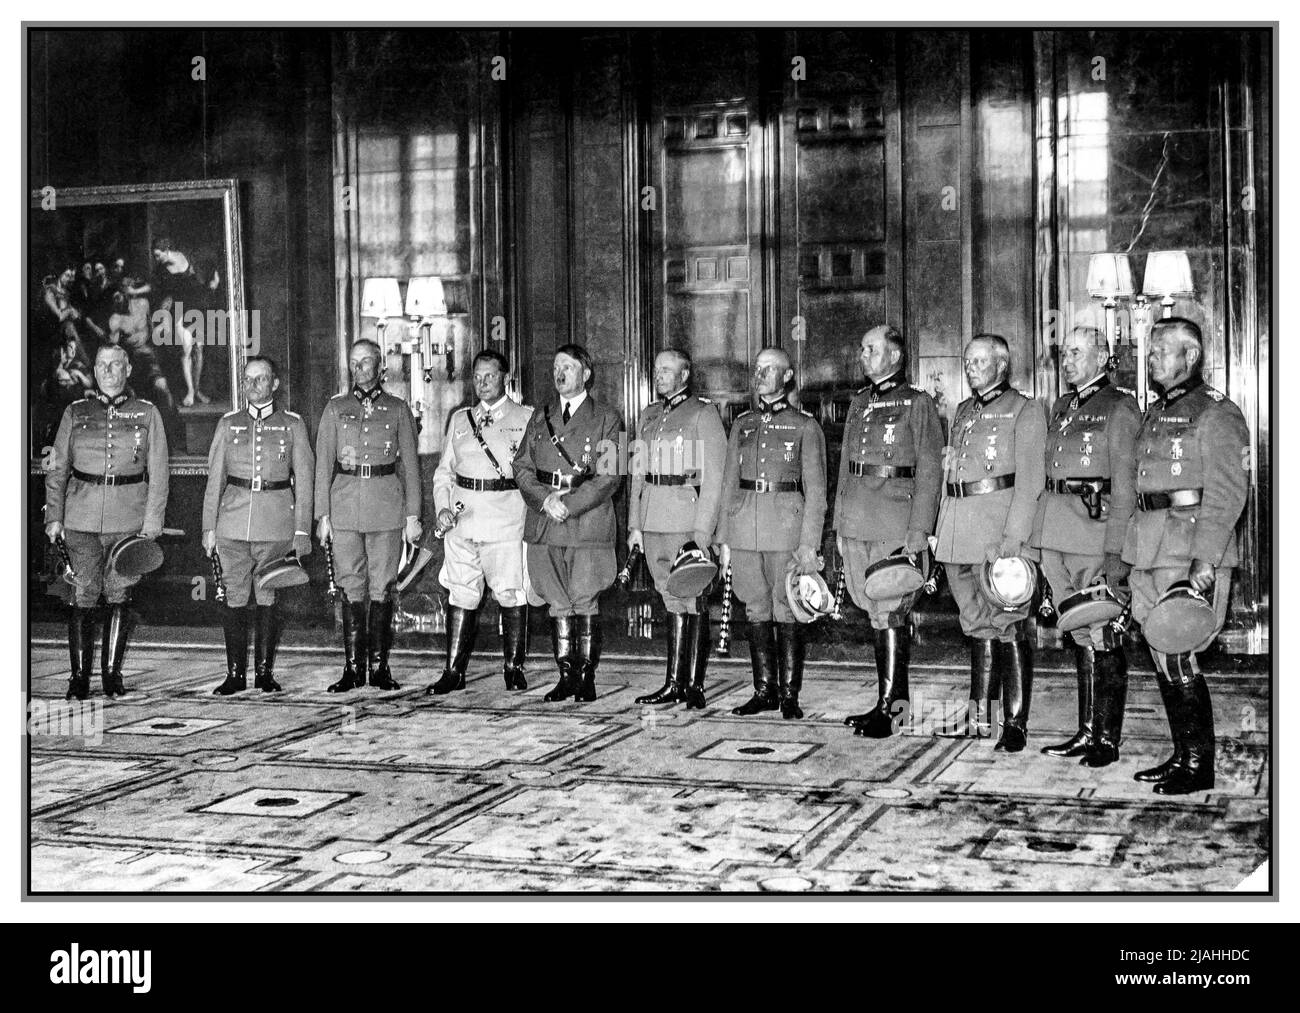 ADOLF HITLER GENERÄLE 1940 Feldmarschall Zeremonie, die Generäle Fedor von Bock, Wilhelm Ritter von Leeb, Gerd von Rundstedt, Wilhelm Keitel, Walther von Brauchitsch, Günther von Kluge, Erwin von Witzleben, Walter von Reichenau, Wilhelm List, Albert Kesselring, Erhard Milch, Hugo Sperrle wurde zum Field Marshals befördert. Hermann Göring wurde in den eigens geschaffenen Rang des Reichsmarschalls befördert. Datum: 19. Juli 1940 Stockfoto